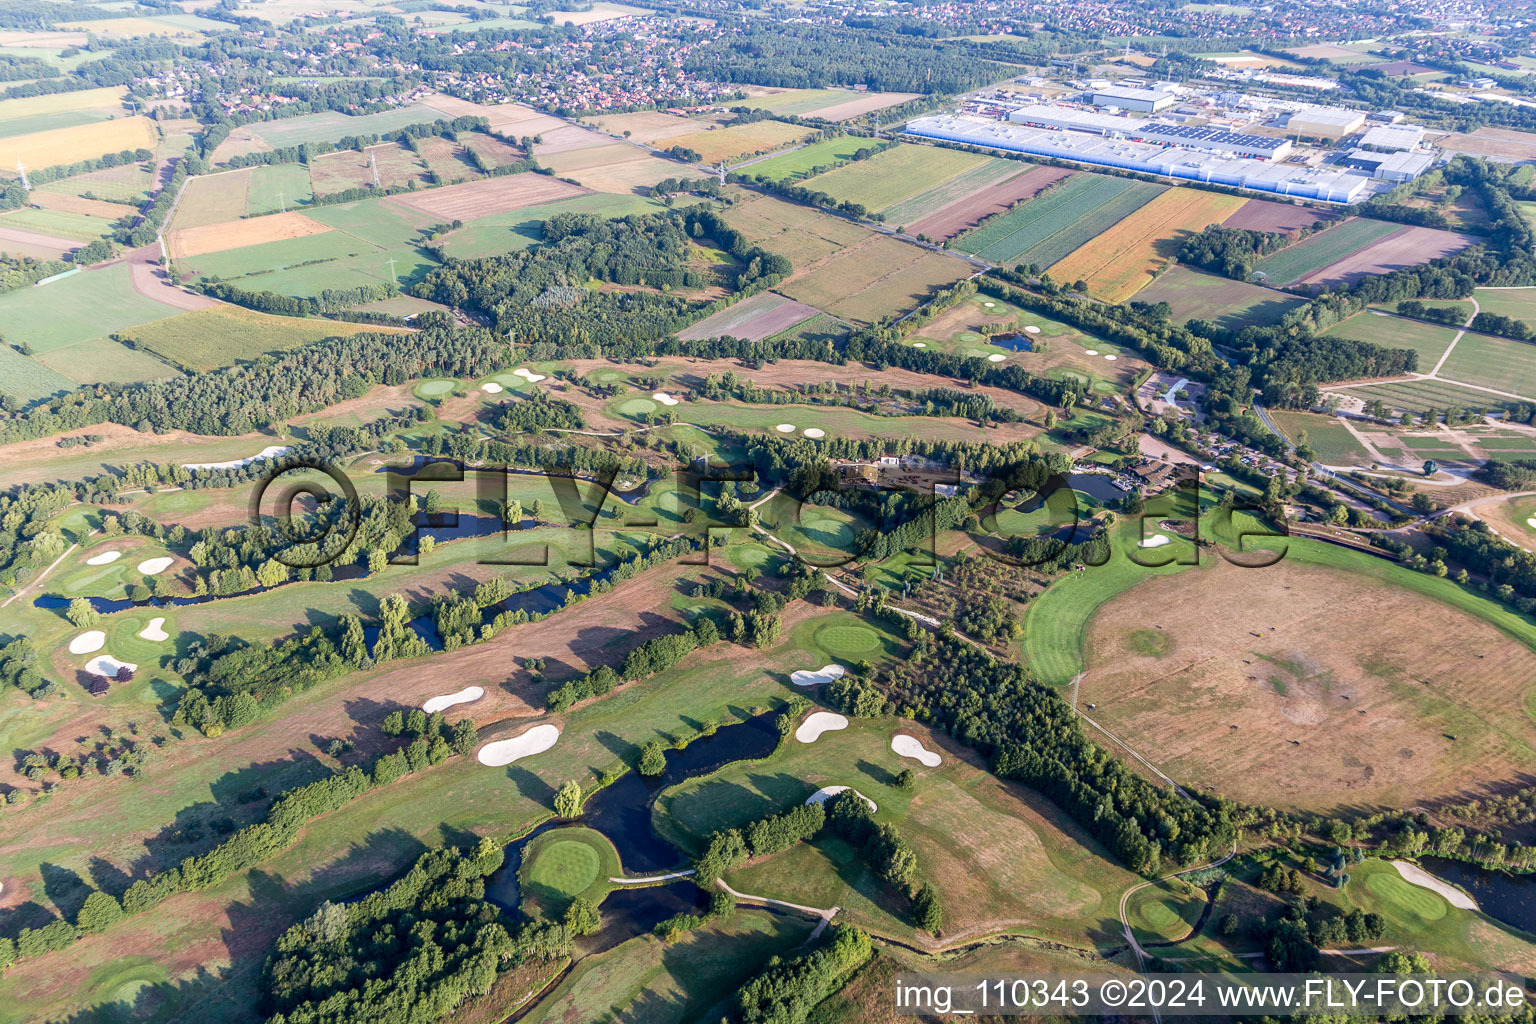 Terrain du parcours de golf Green Eagle à Winsen (Luhe) dans le département Basse-Saxe, Allemagne d'un drone